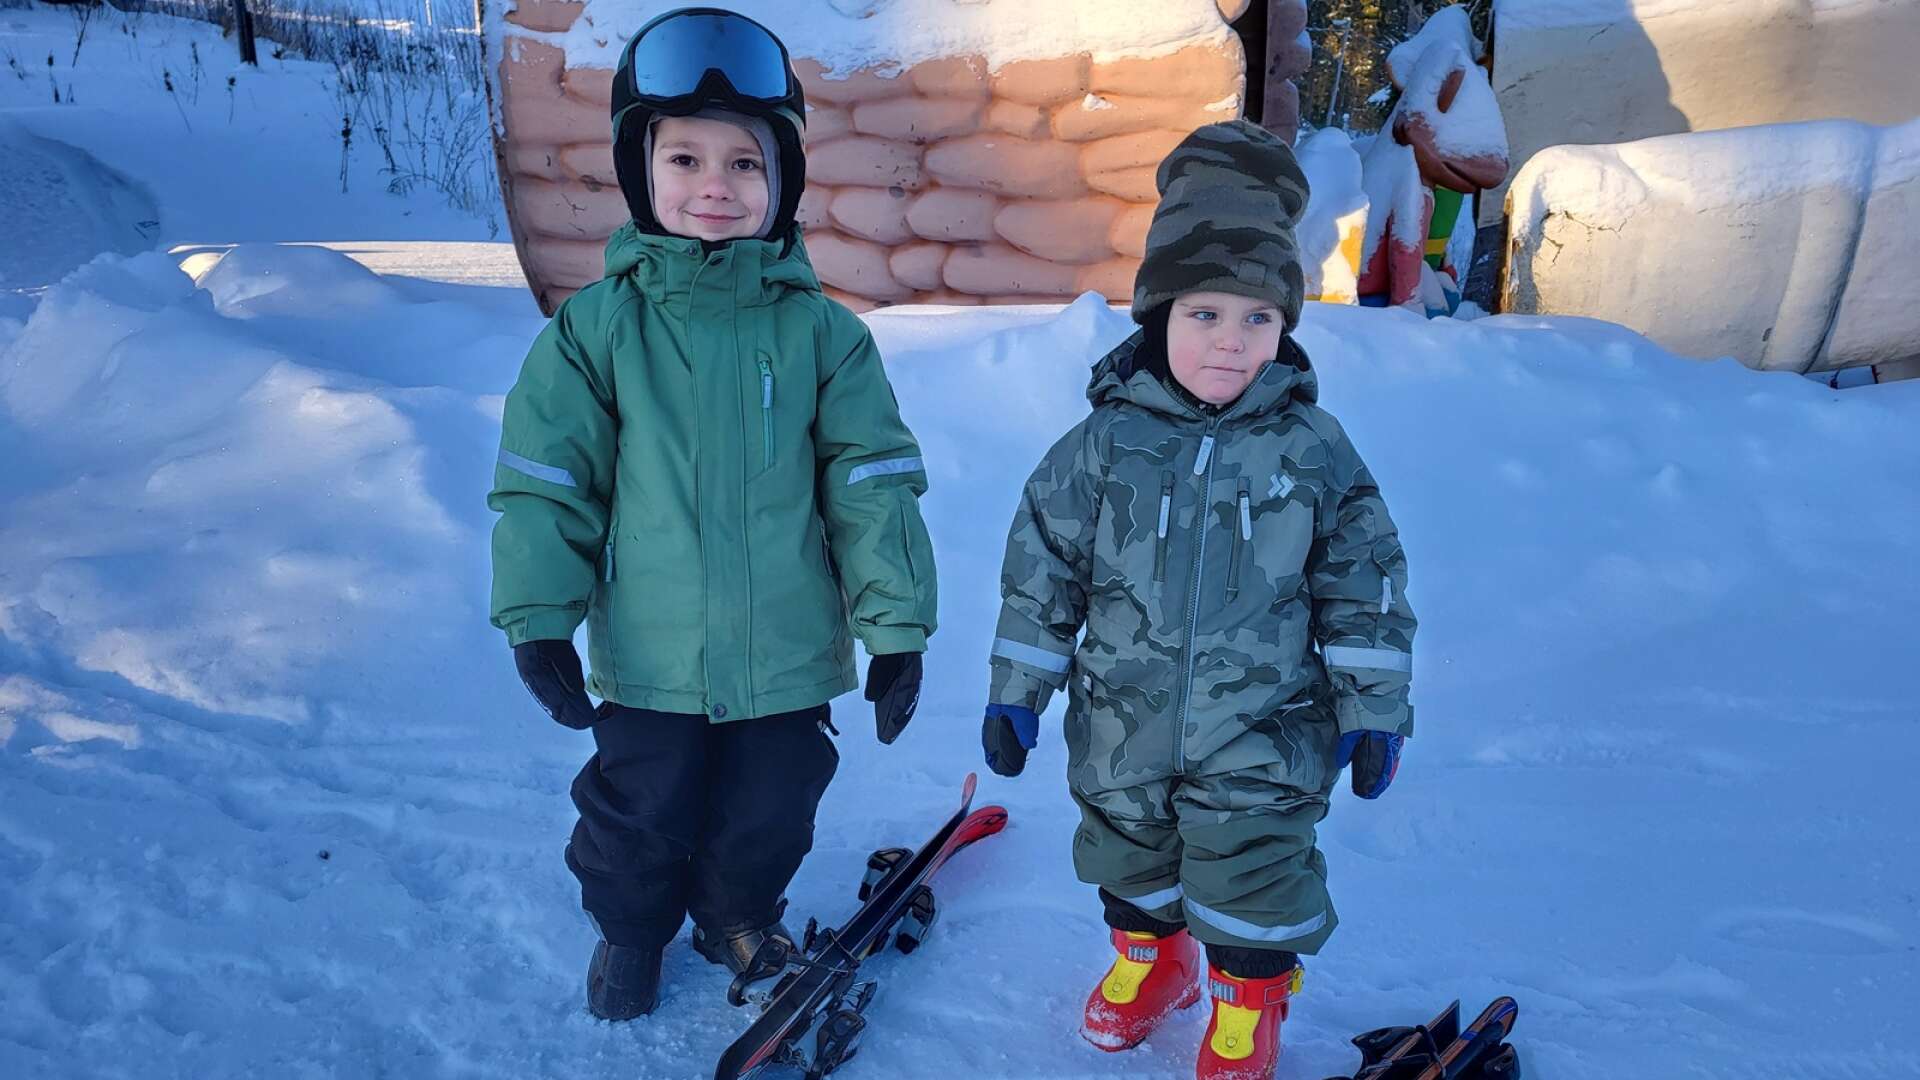 I fredags var det äntligen premiär i Lesjöfors slalombacke. Två av de yngre åkarna var  Malte Engström Johansson och Ture Engström Eckerwall. De tyckte att det skulle bli kul att åka, trots det kylslagna vädret.